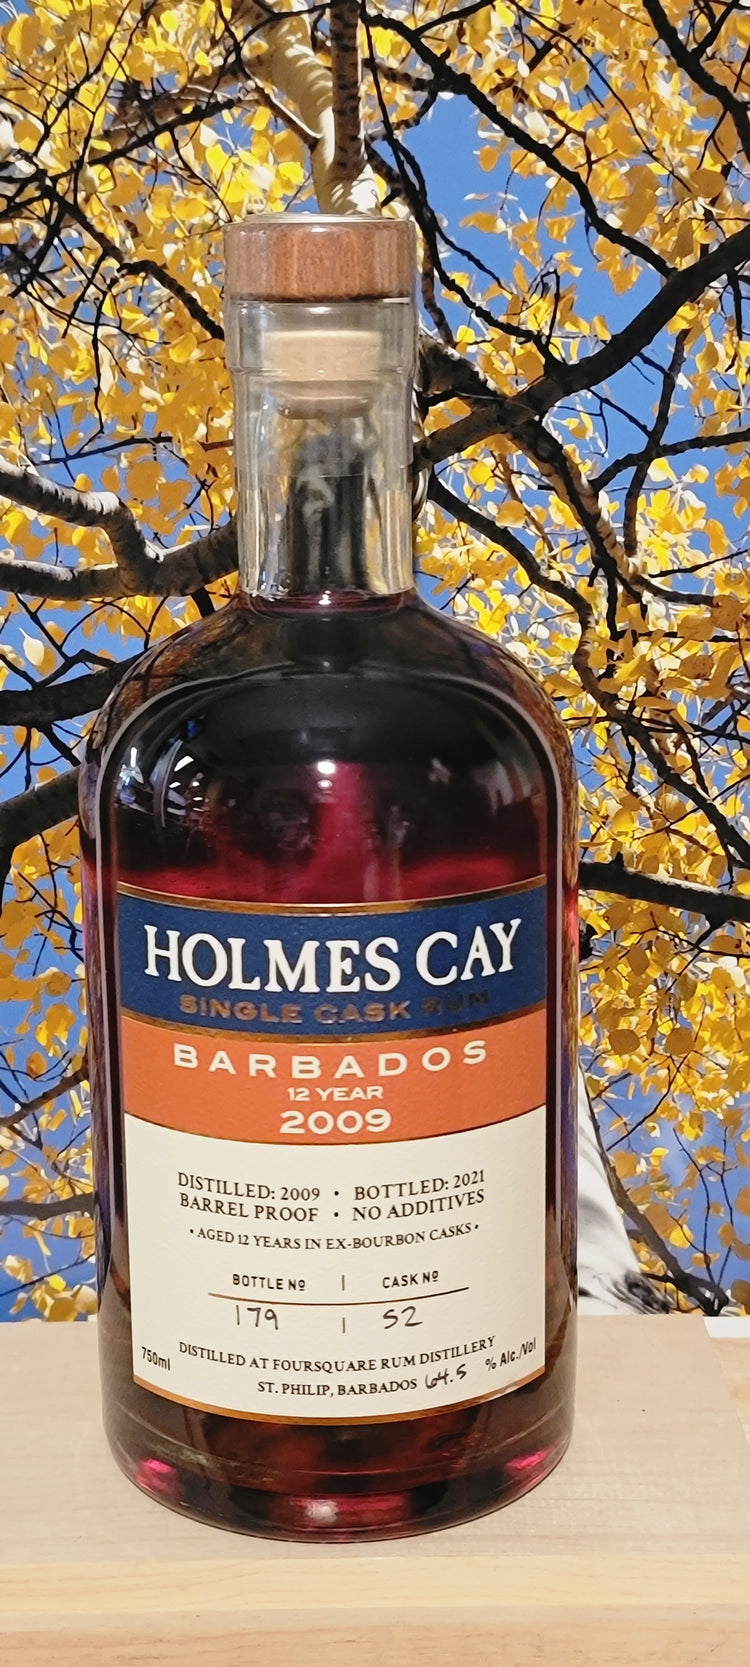 Holmes cay single cask barbados rum